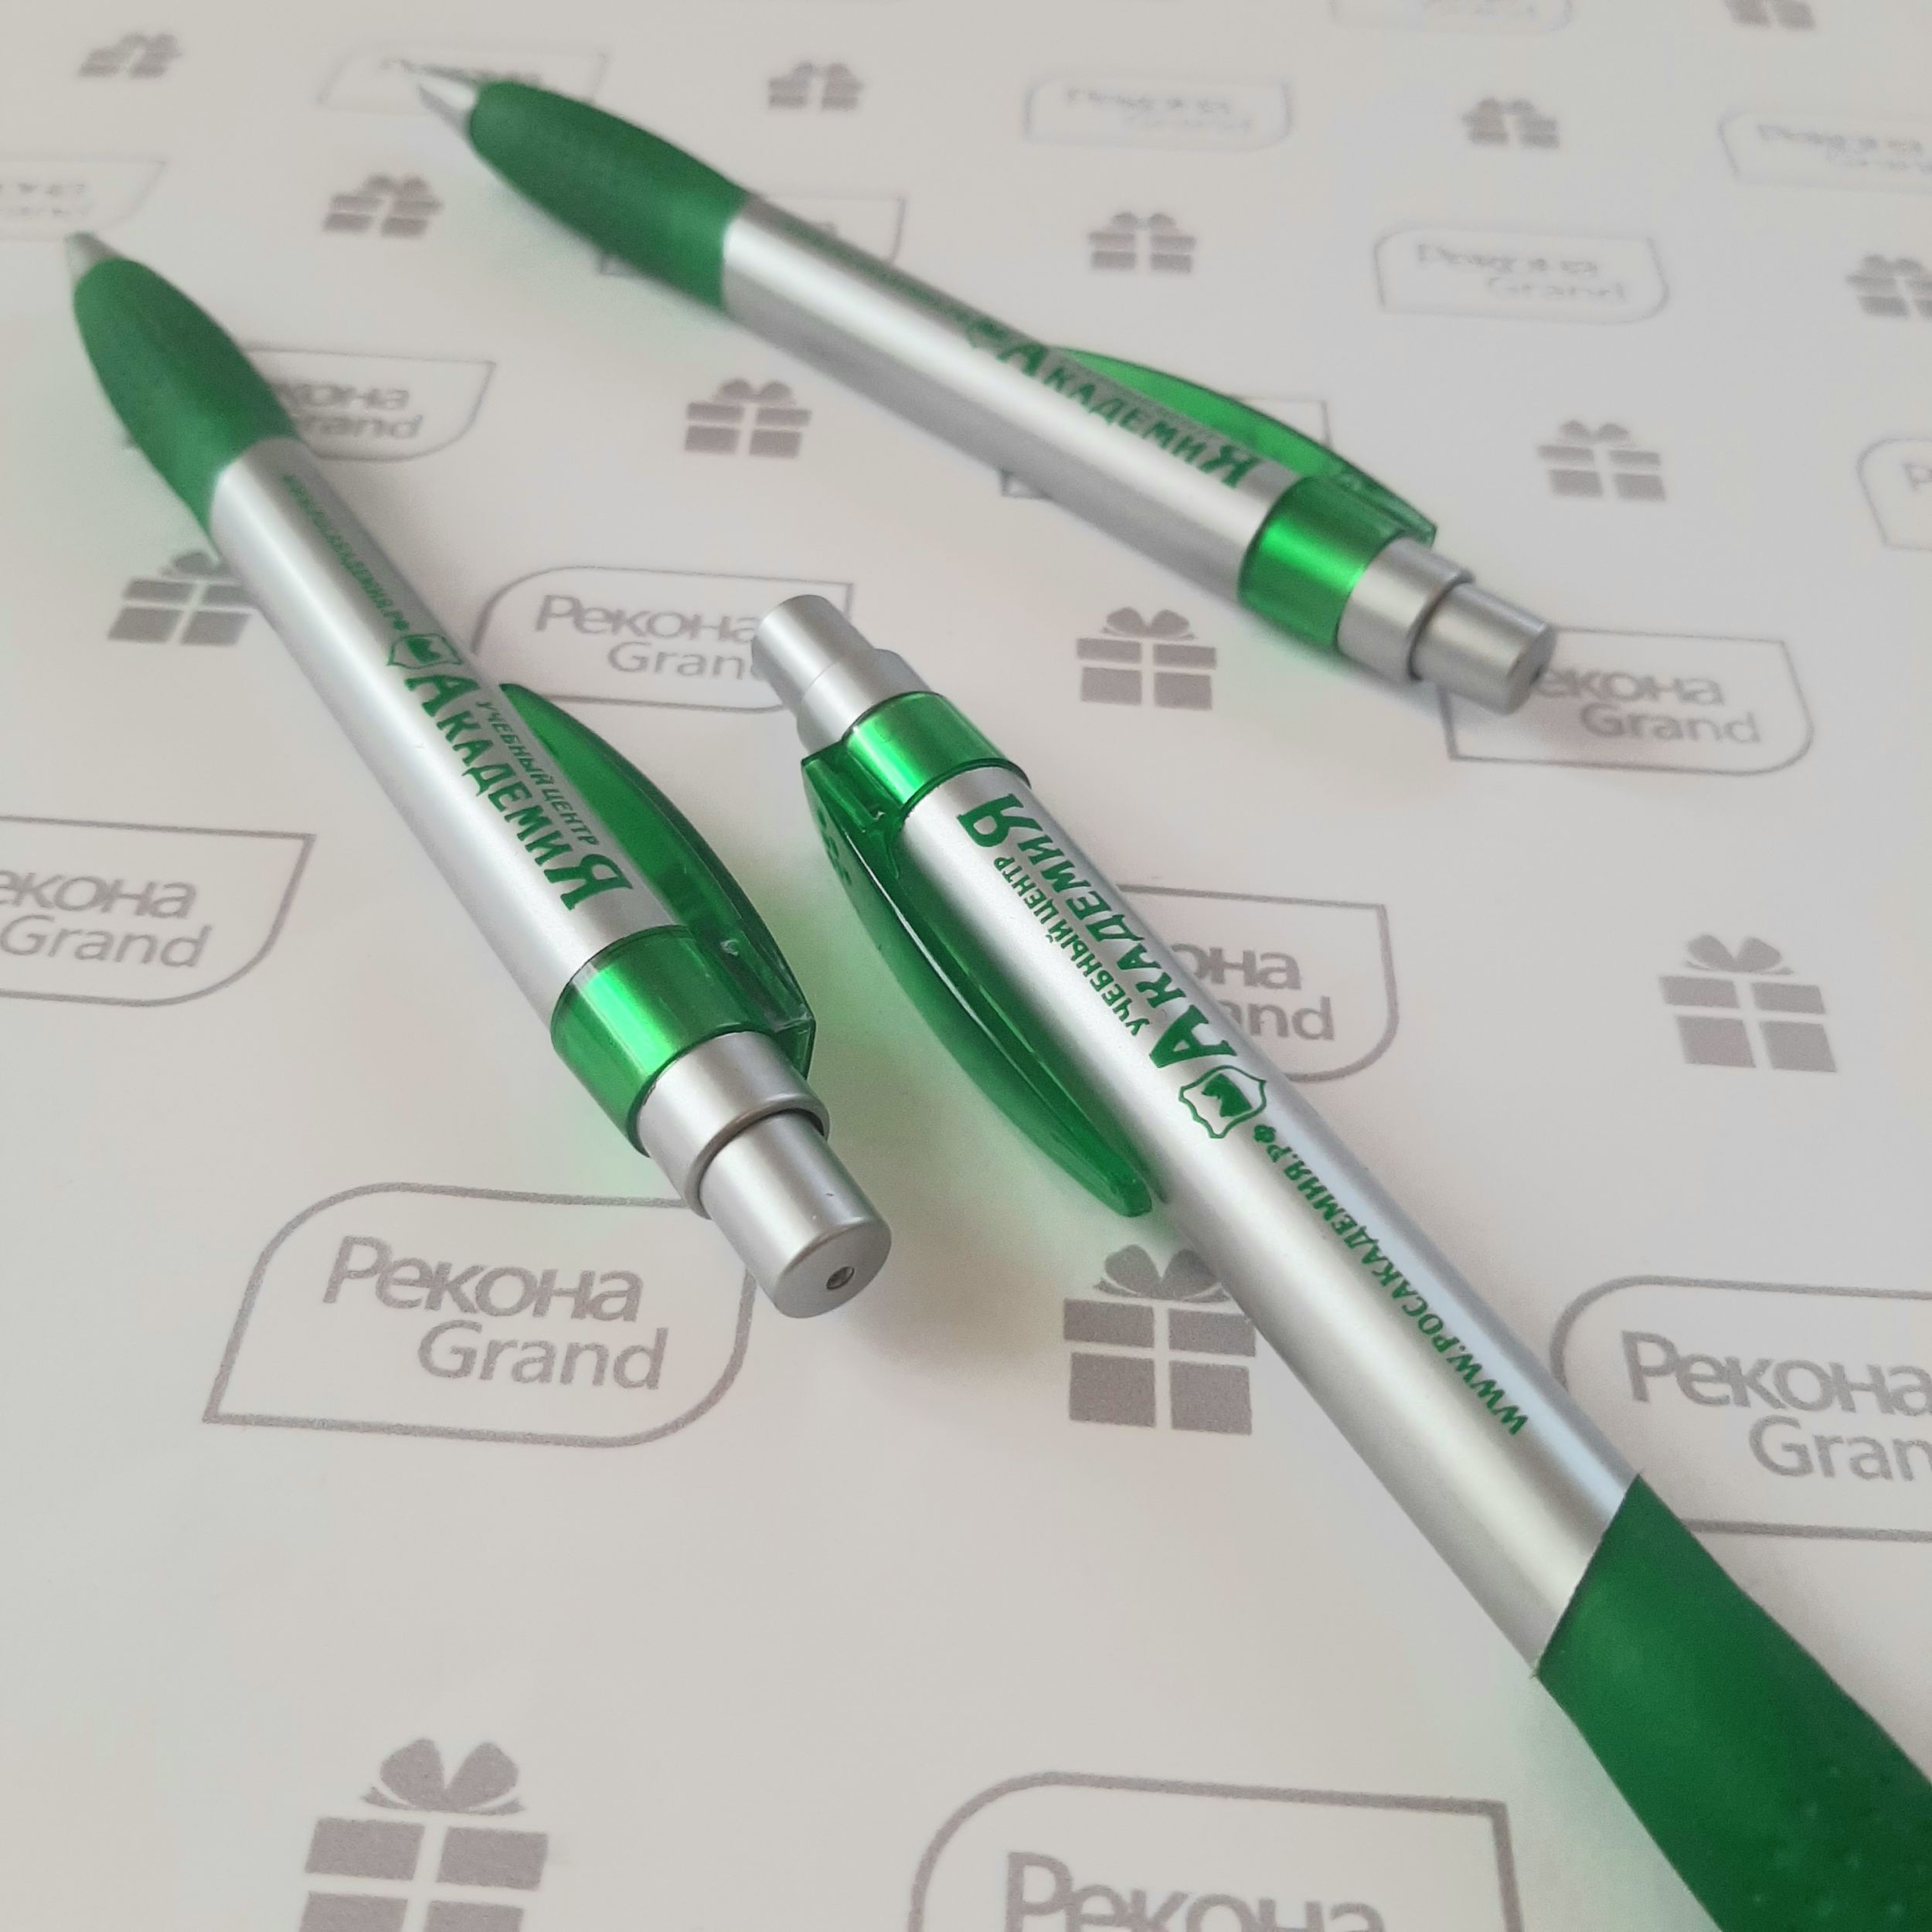 ручки с логотипом в Самаре